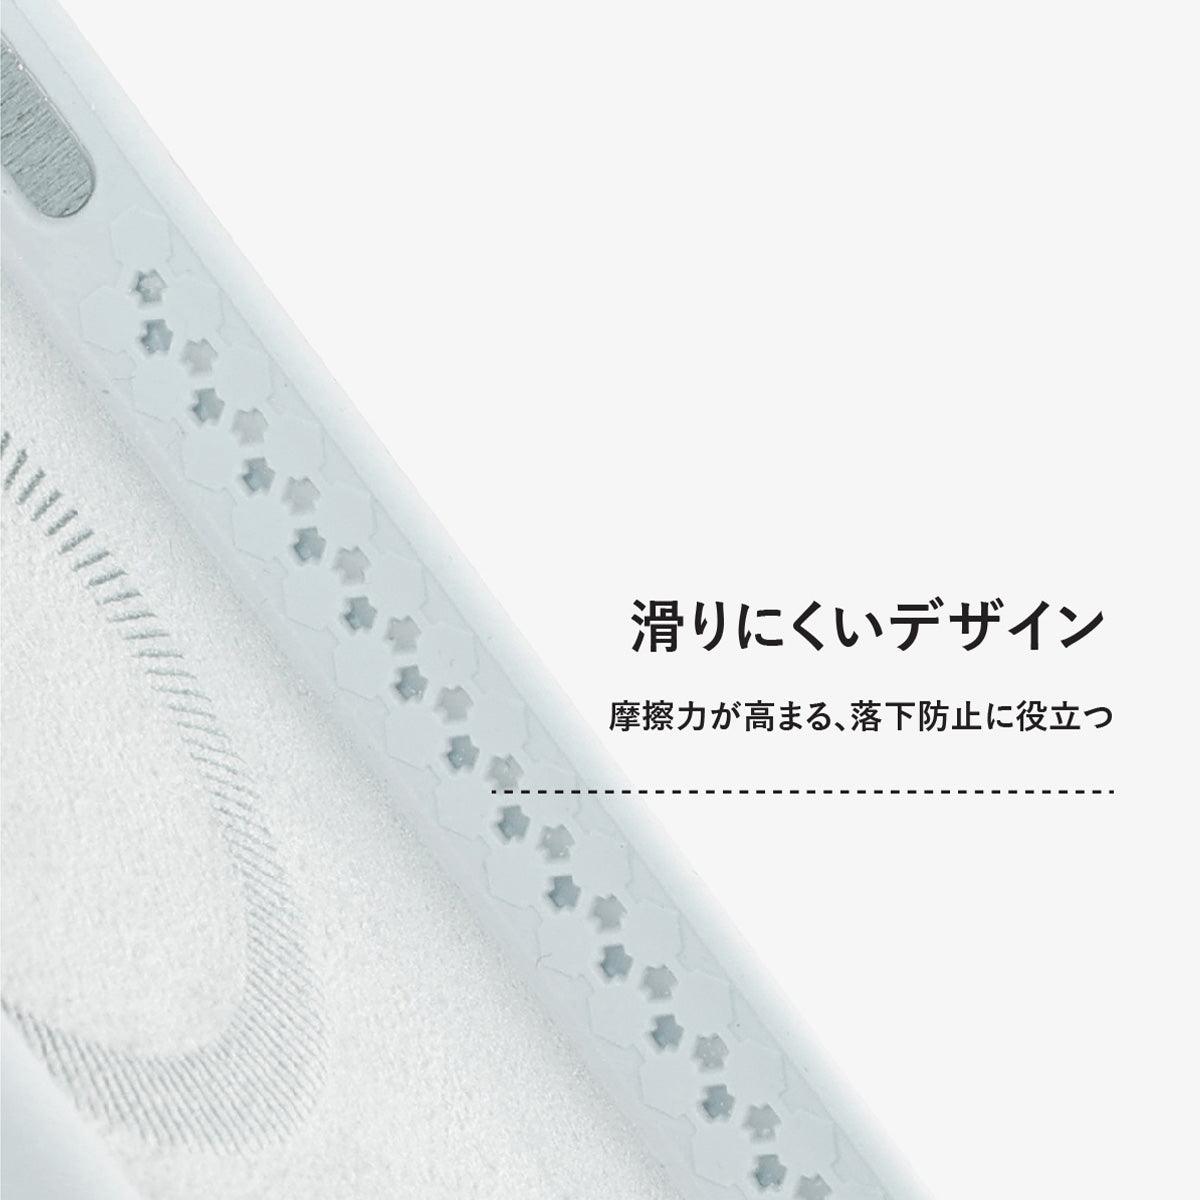 iPhone 12 ブラック シリコン スマホケース MagSafe対応 - CORECOLOUR